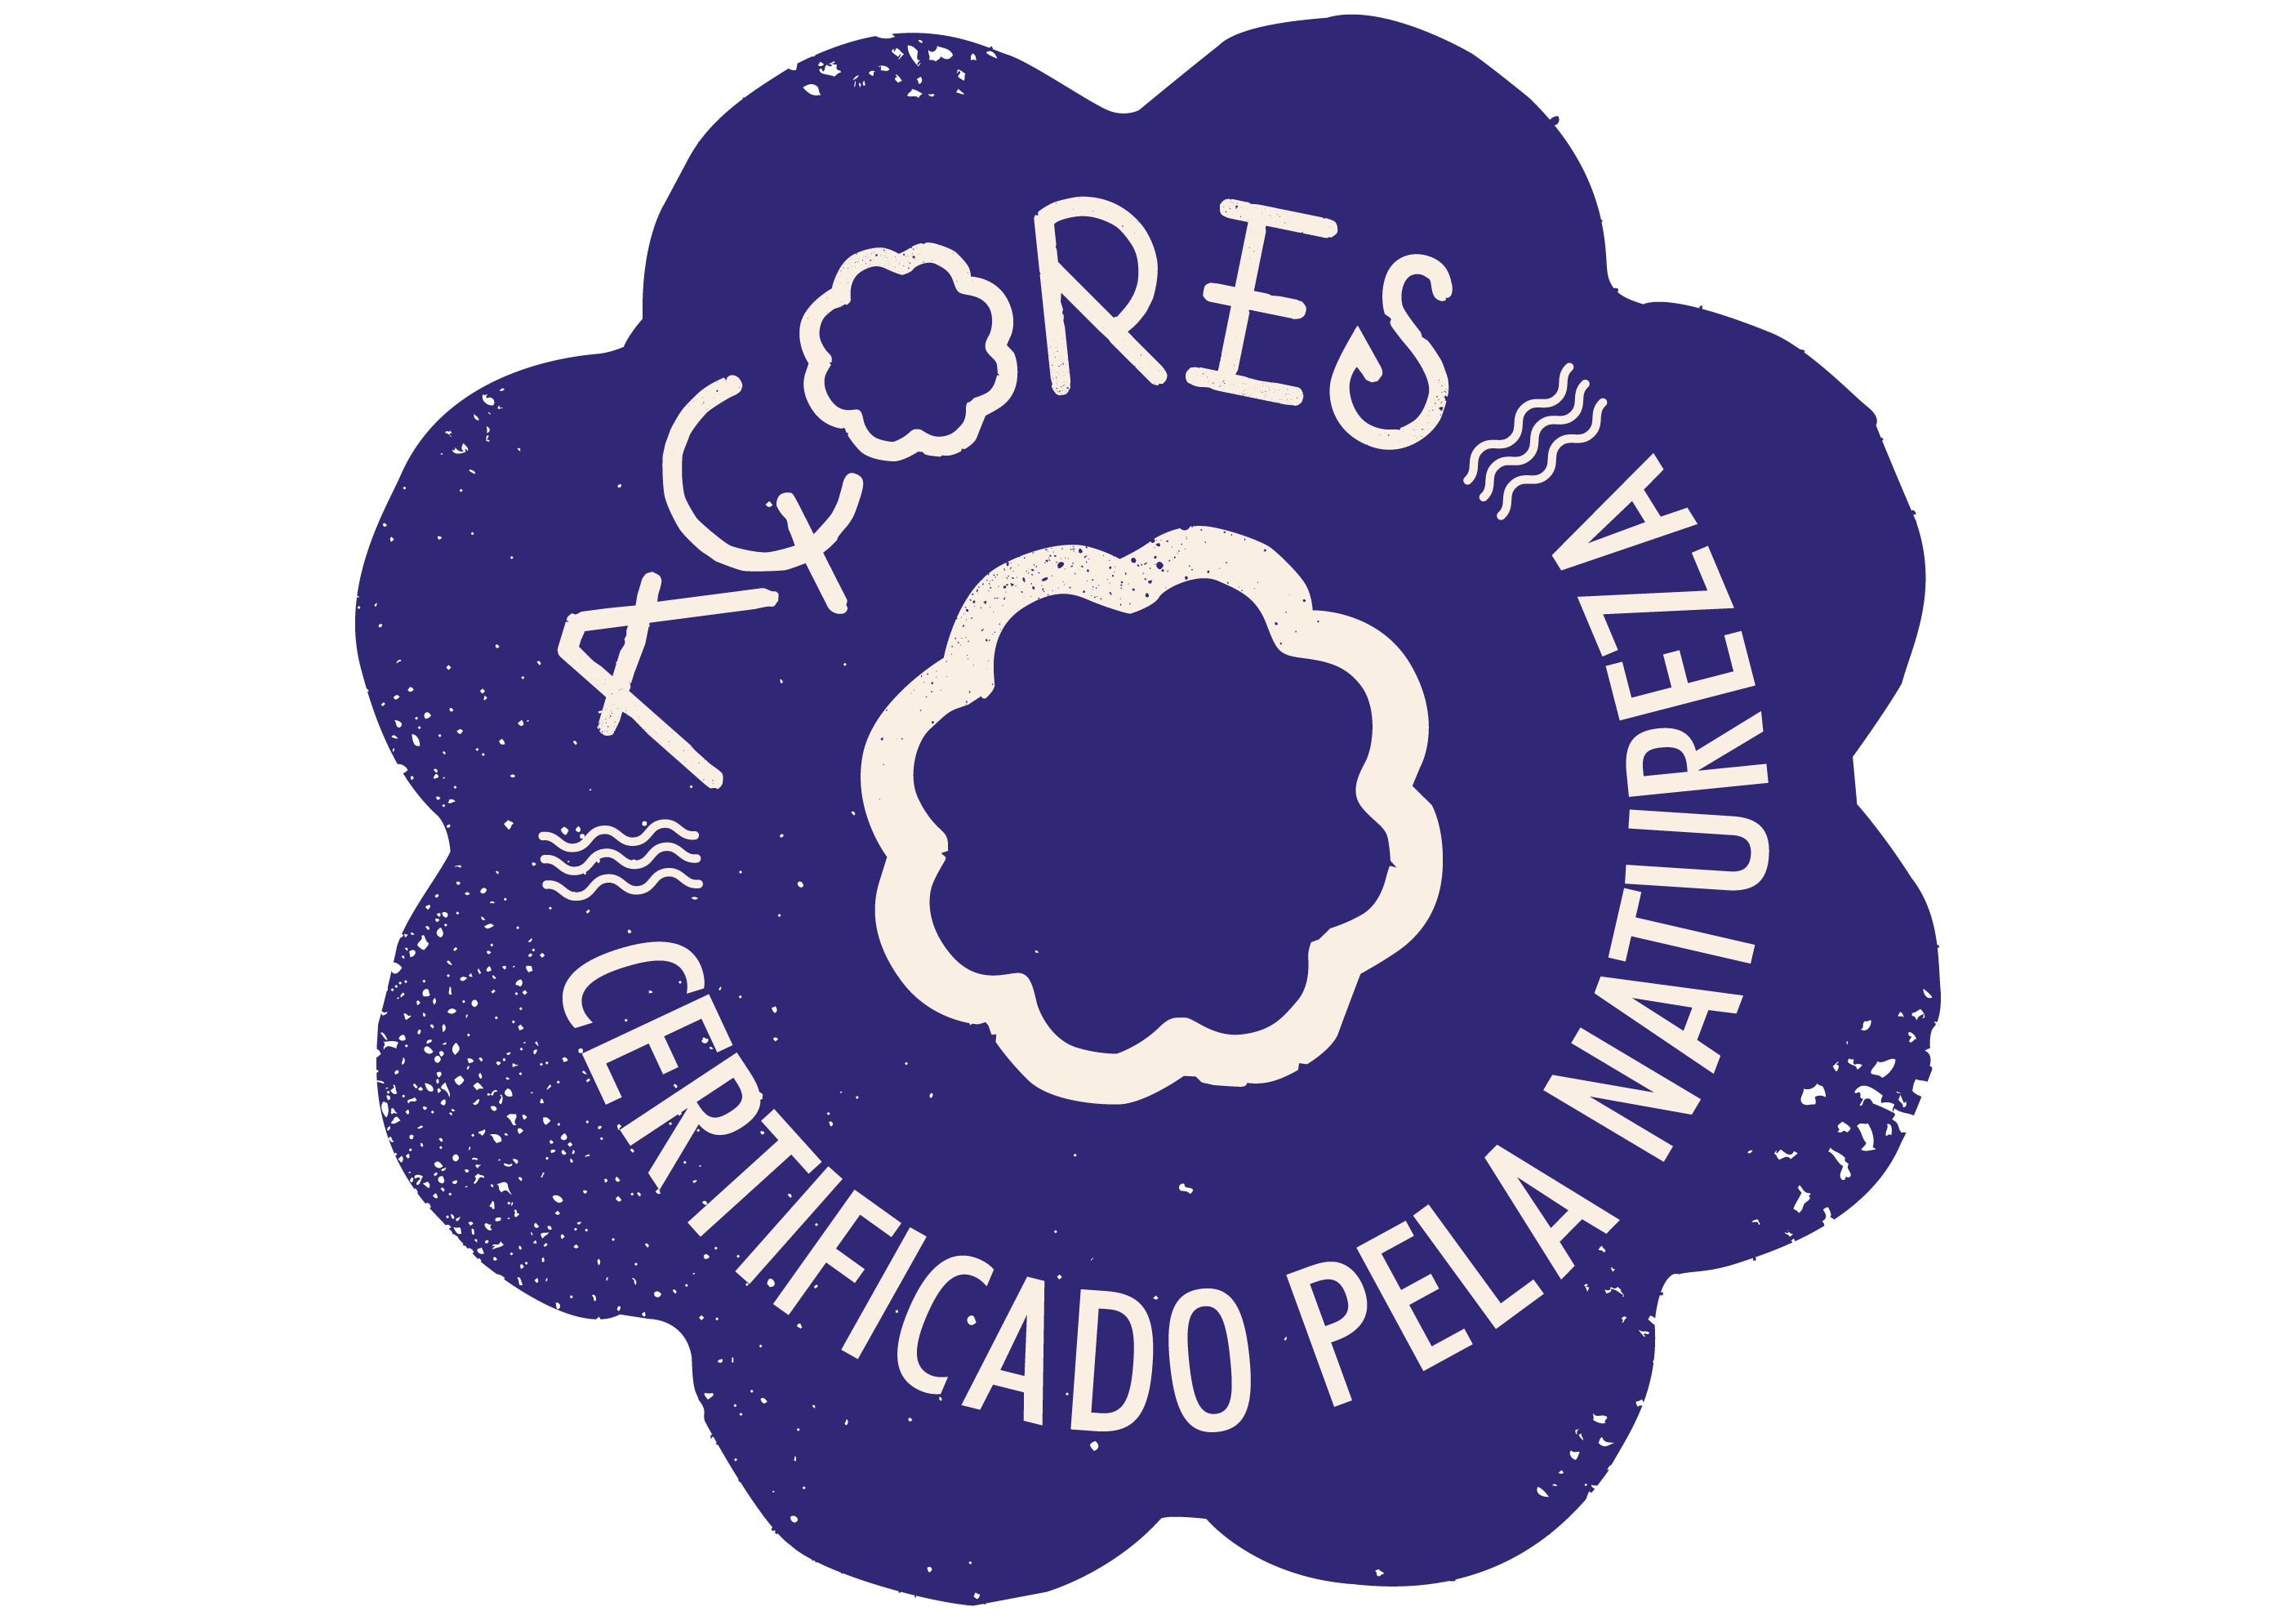 Açores - Certificado pela Natureza